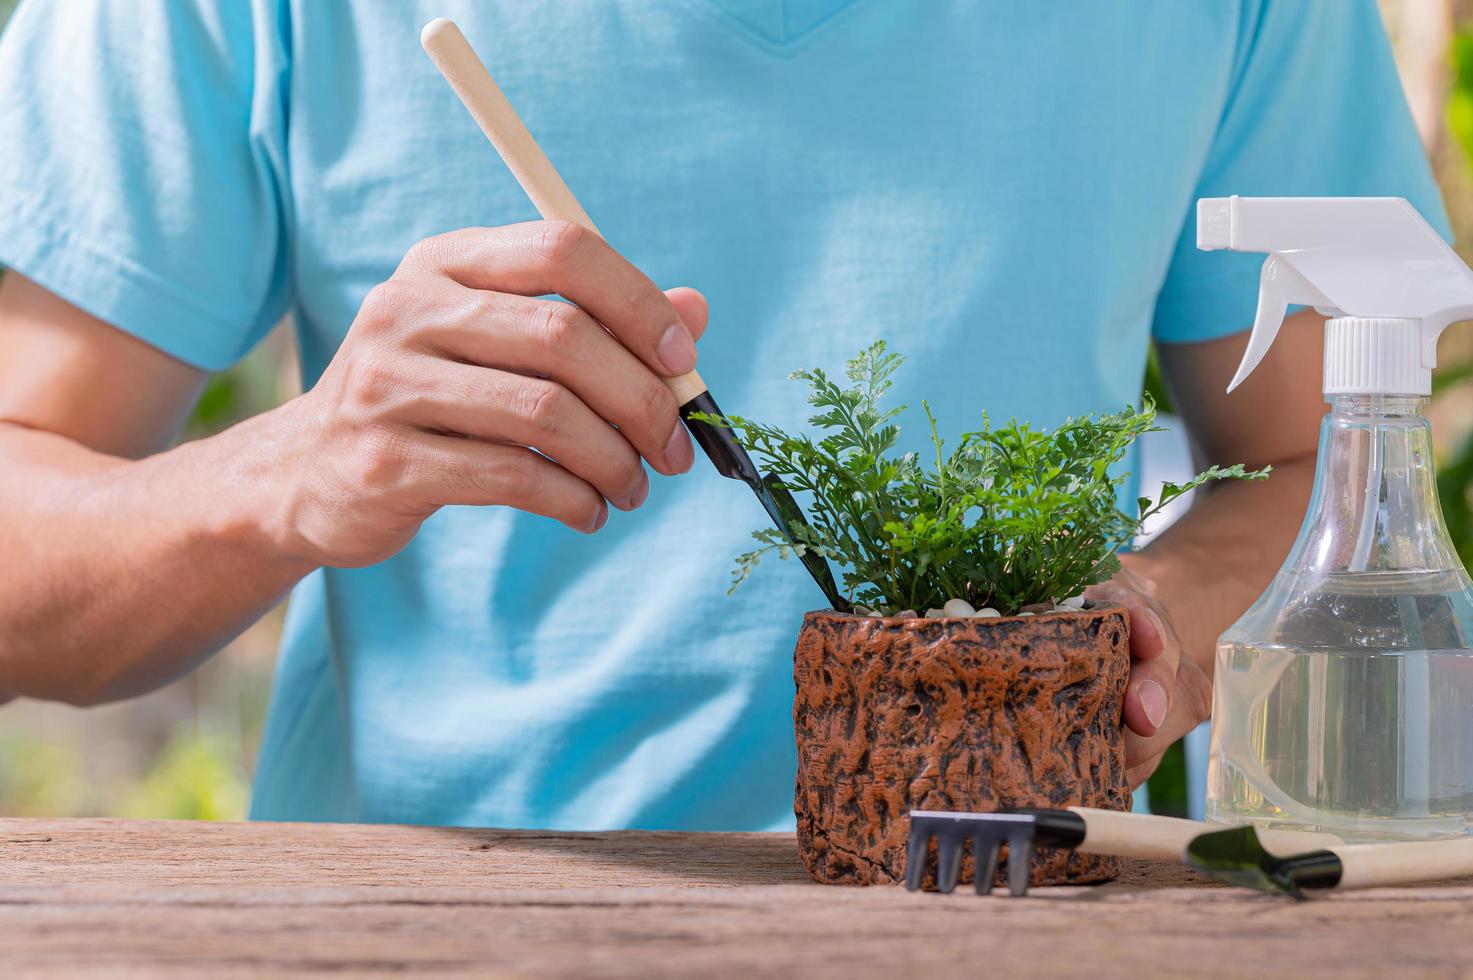 une personne plantant des arbres dans des pots, concept pour l'amour des plantes et de l'environnement photo